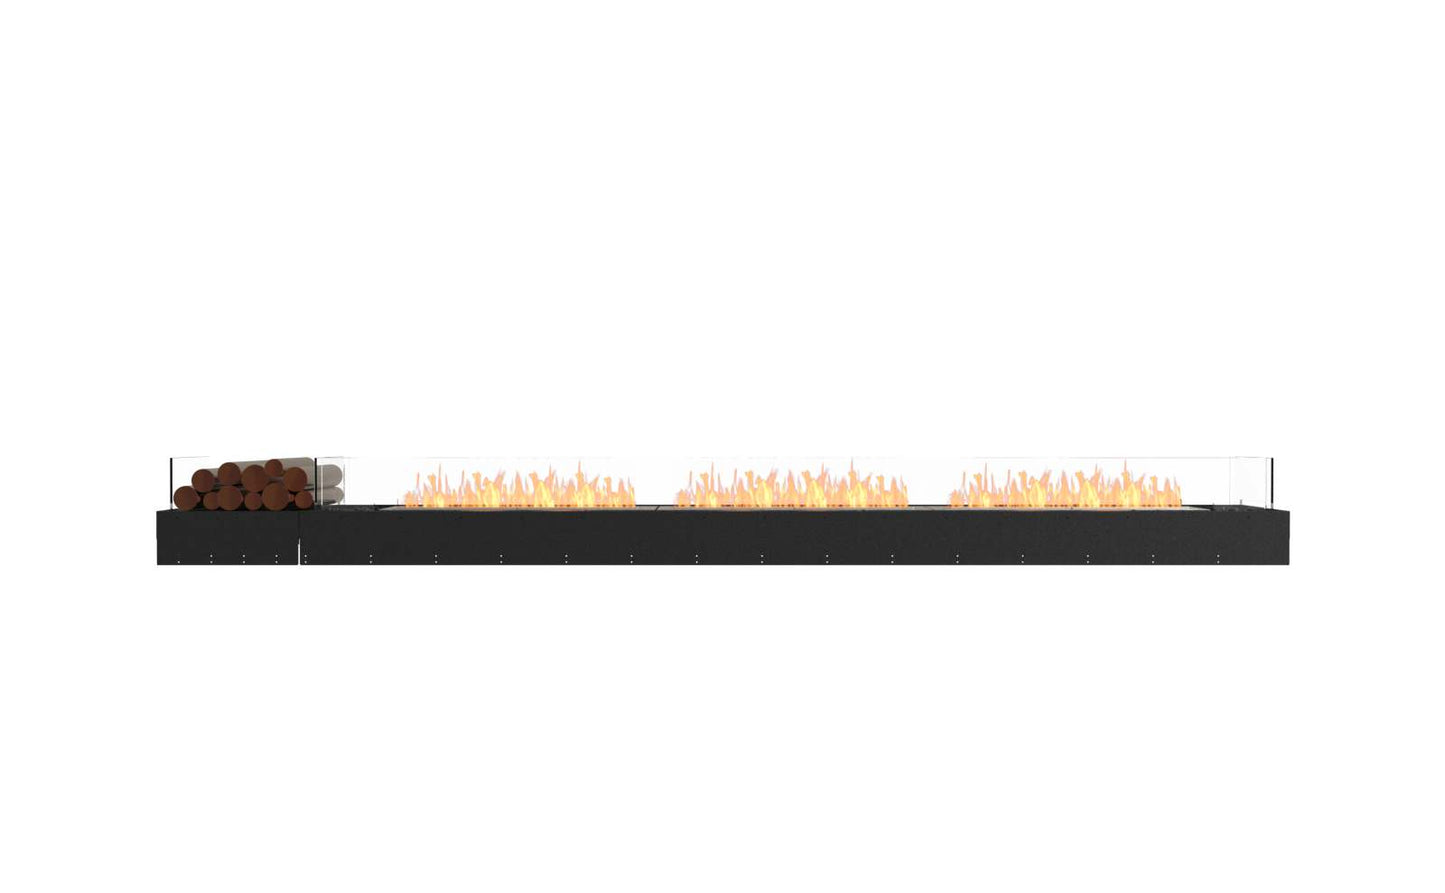 EcoSmart - Flex Fireplace 140BN.BX1 - Bench - Black